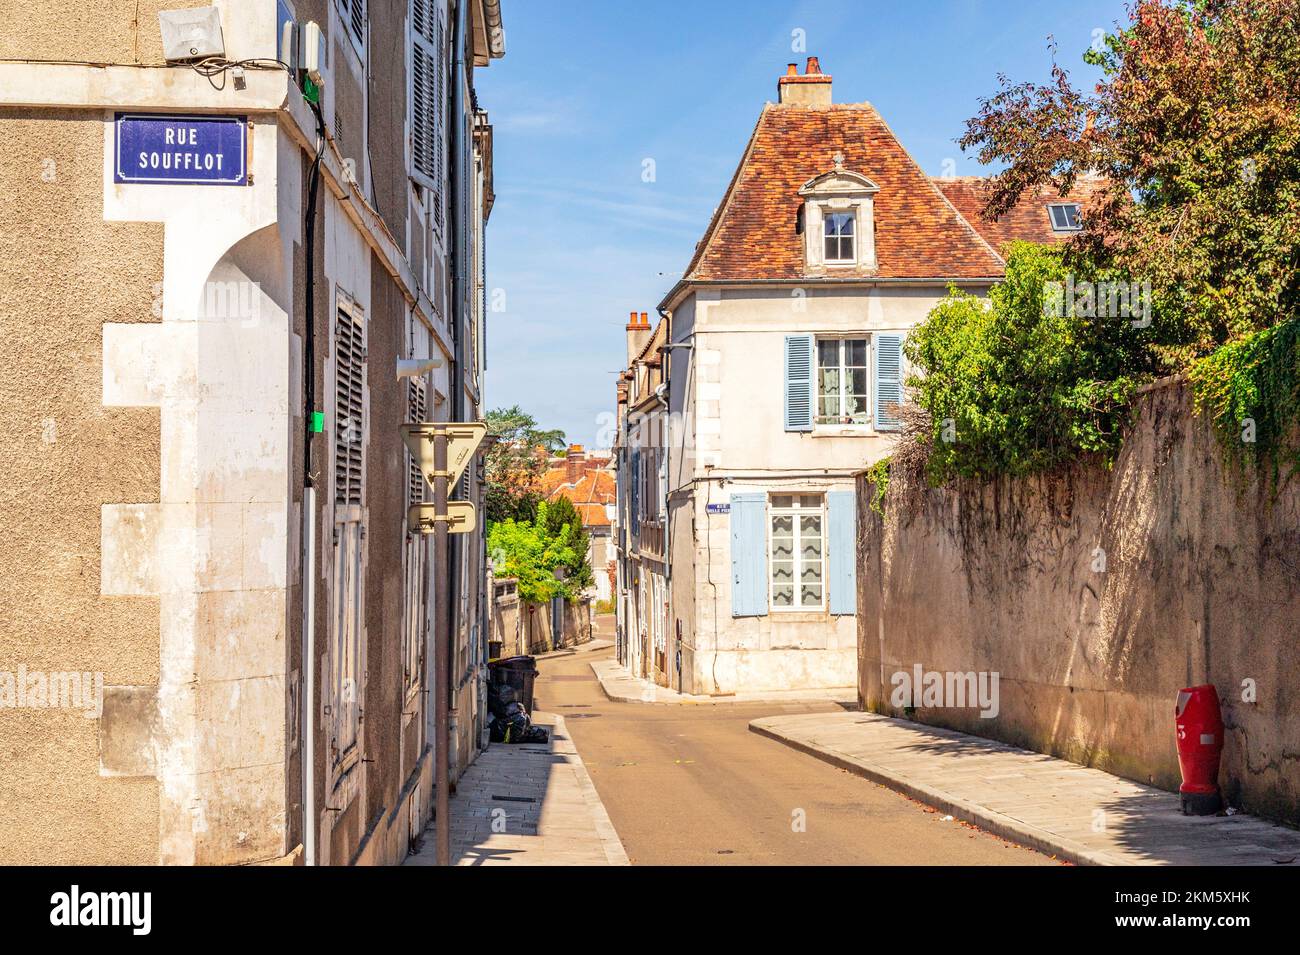 La rue de l'égalité dans la vieille ville d'Auxerre, France Banque D'Images